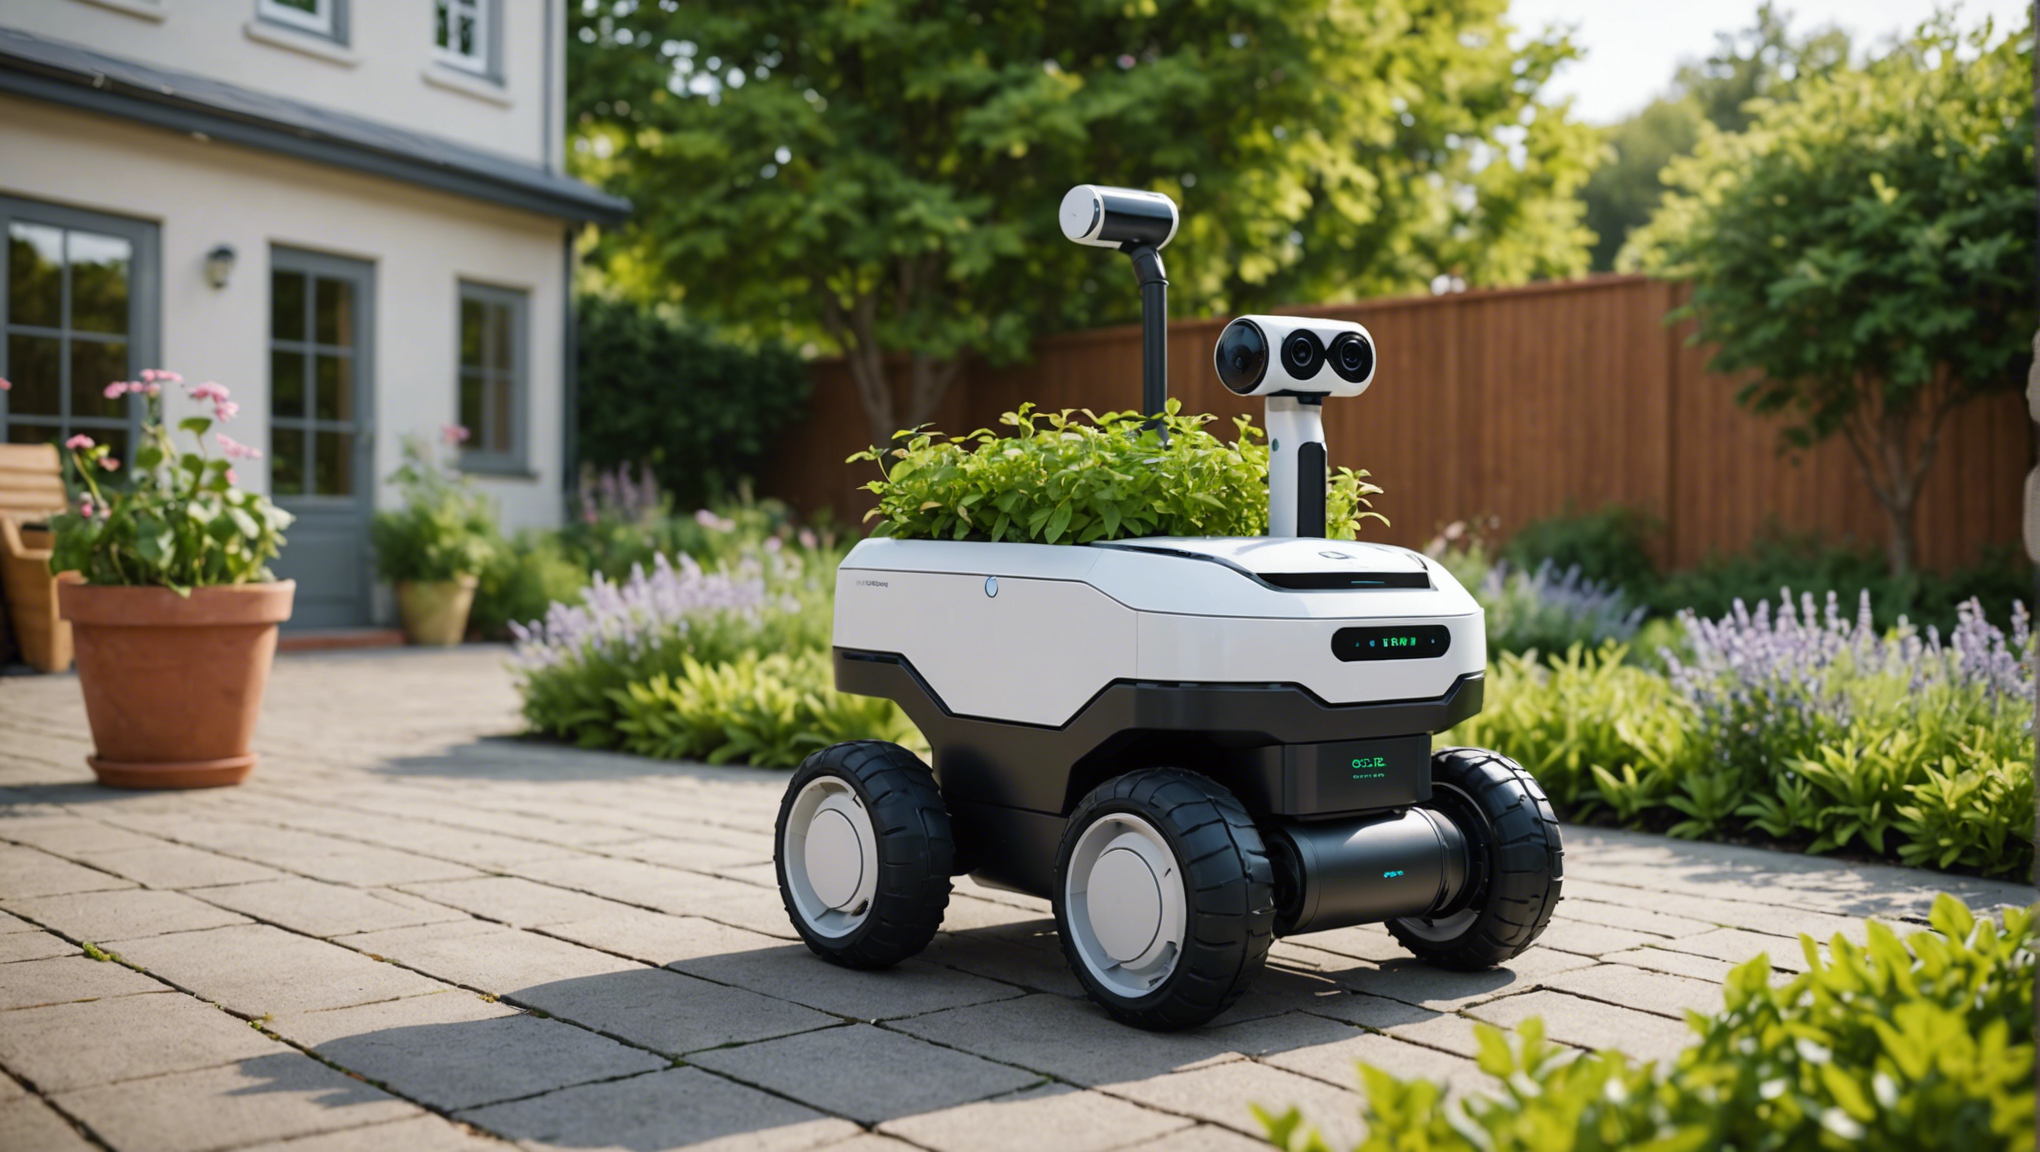 trouvez une main-d'œuvre efficace pour votre jardin dans le gard grâce à la location de robot jardinier. simplifiez l'entretien de votre jardin en optant pour cette solution moderne et pratique.